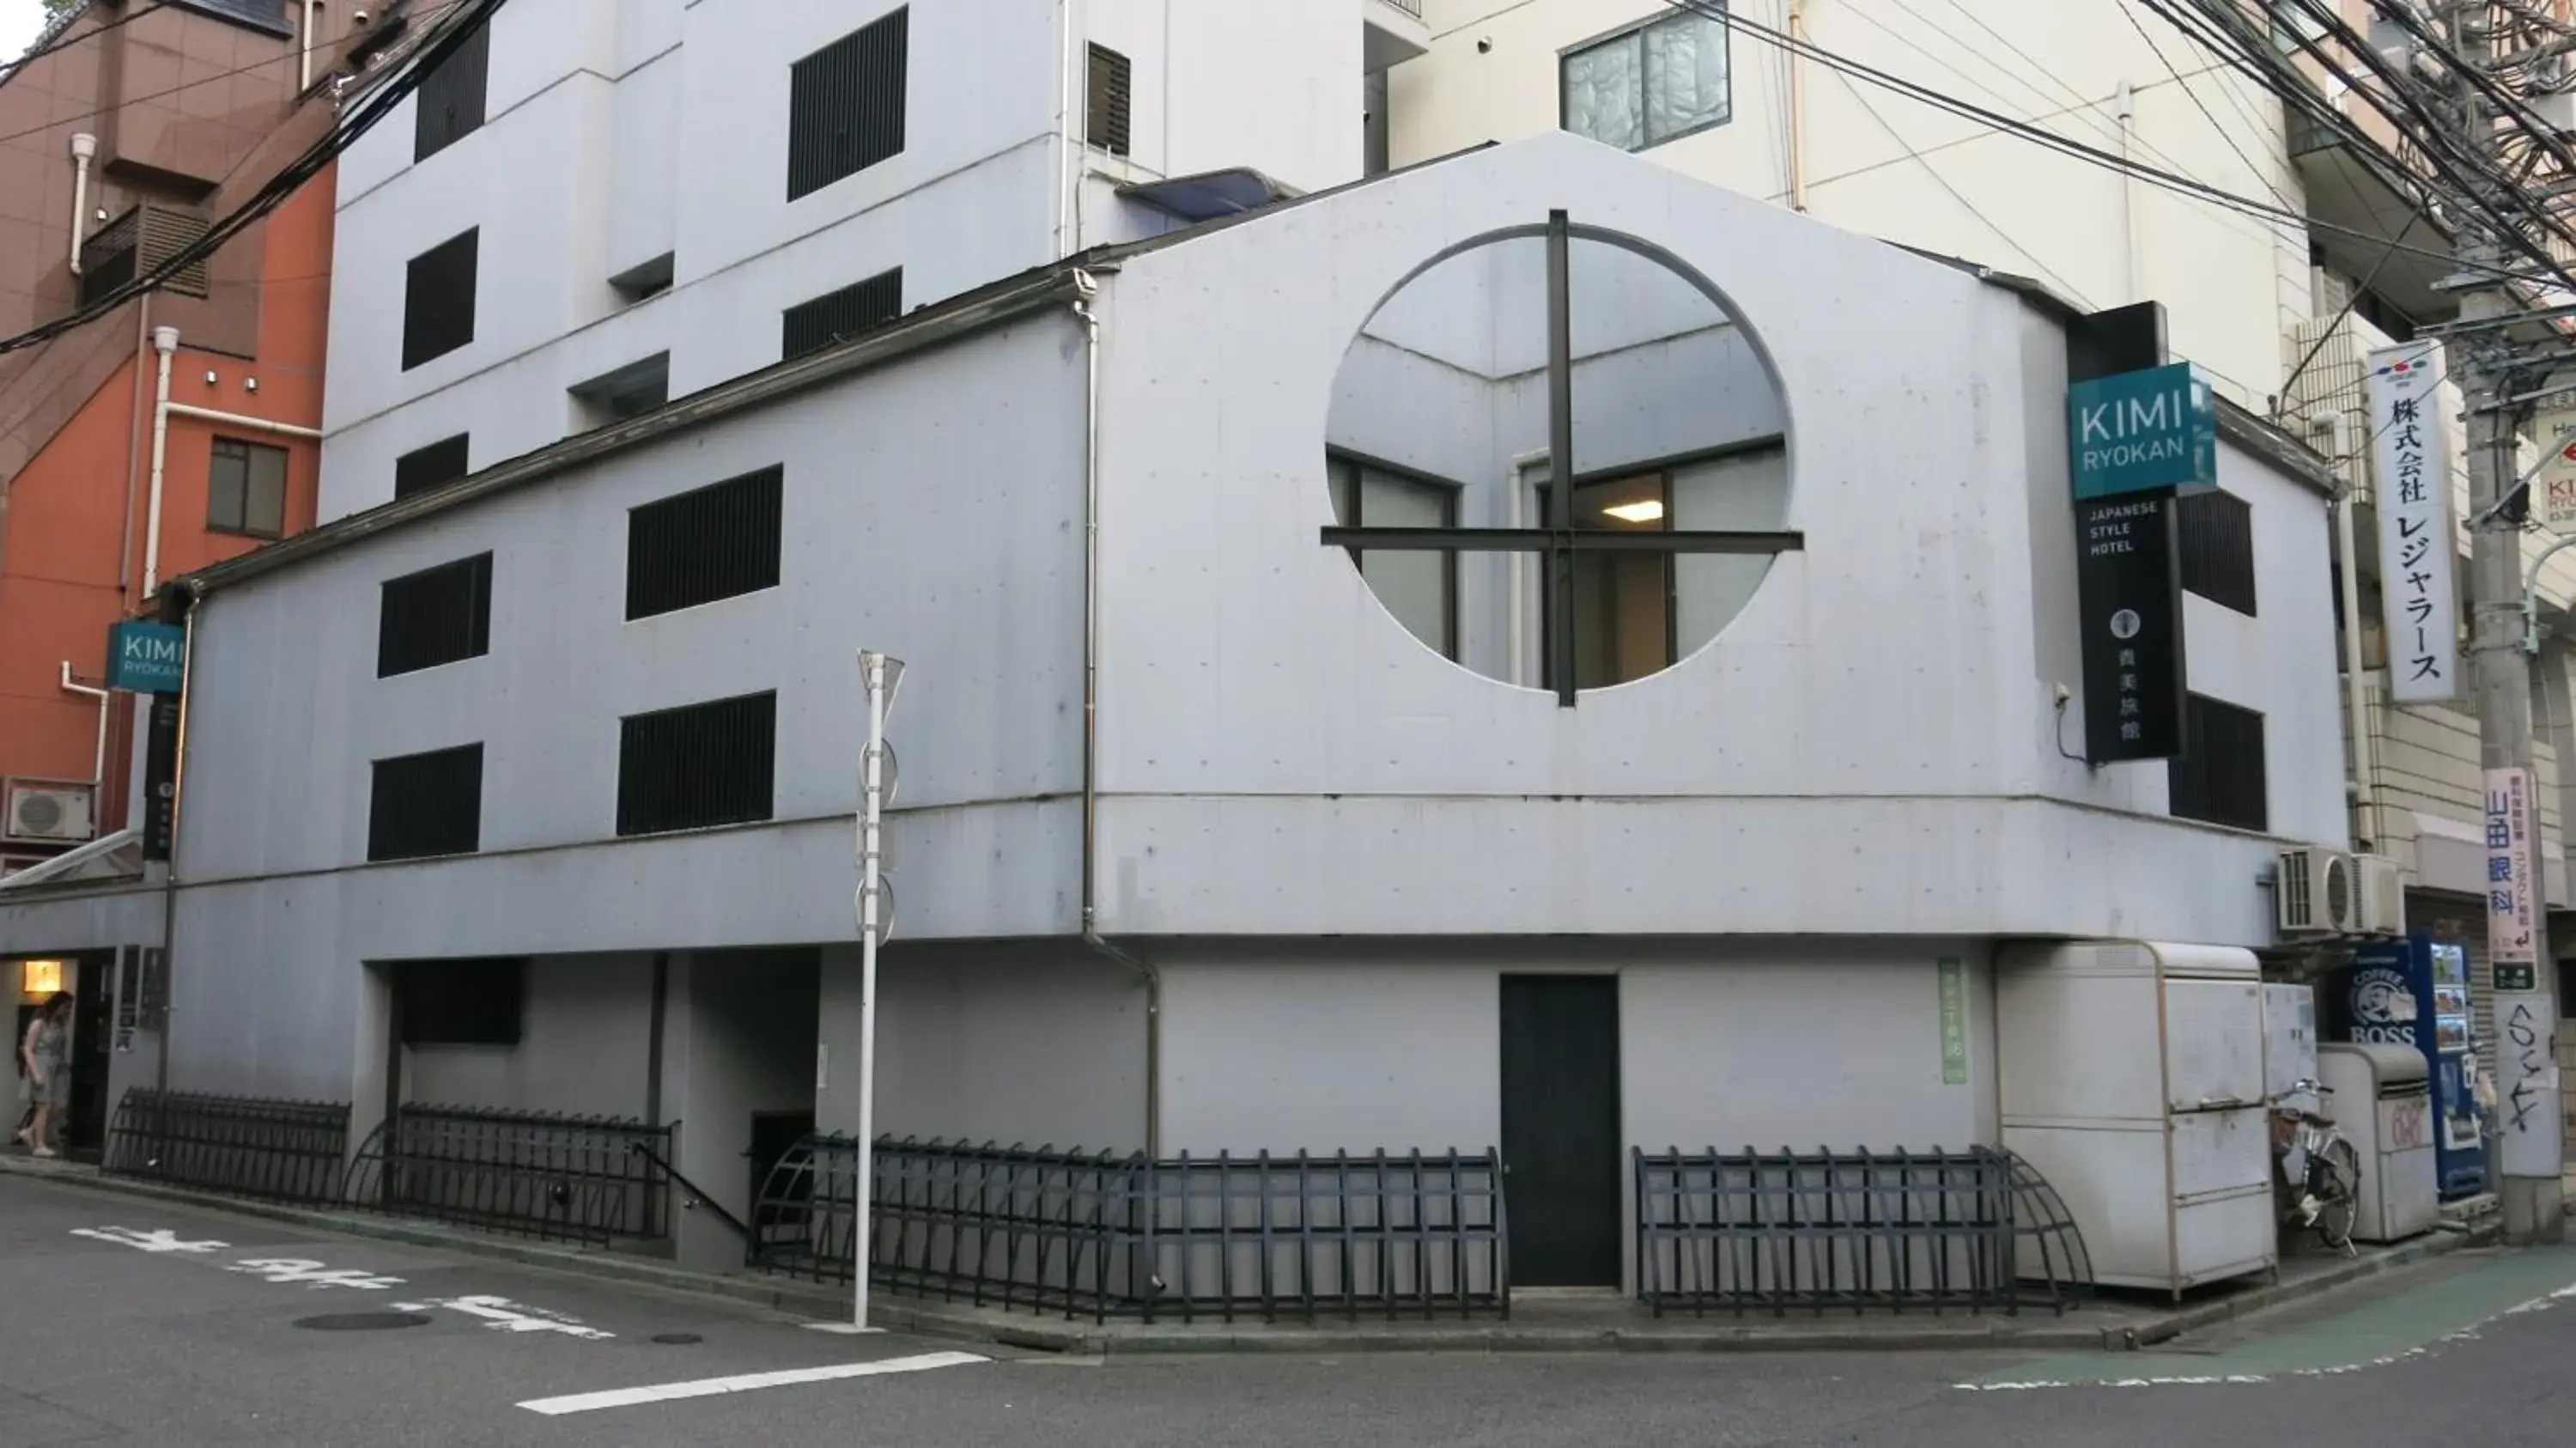 Property Building in Kimi Ryokan